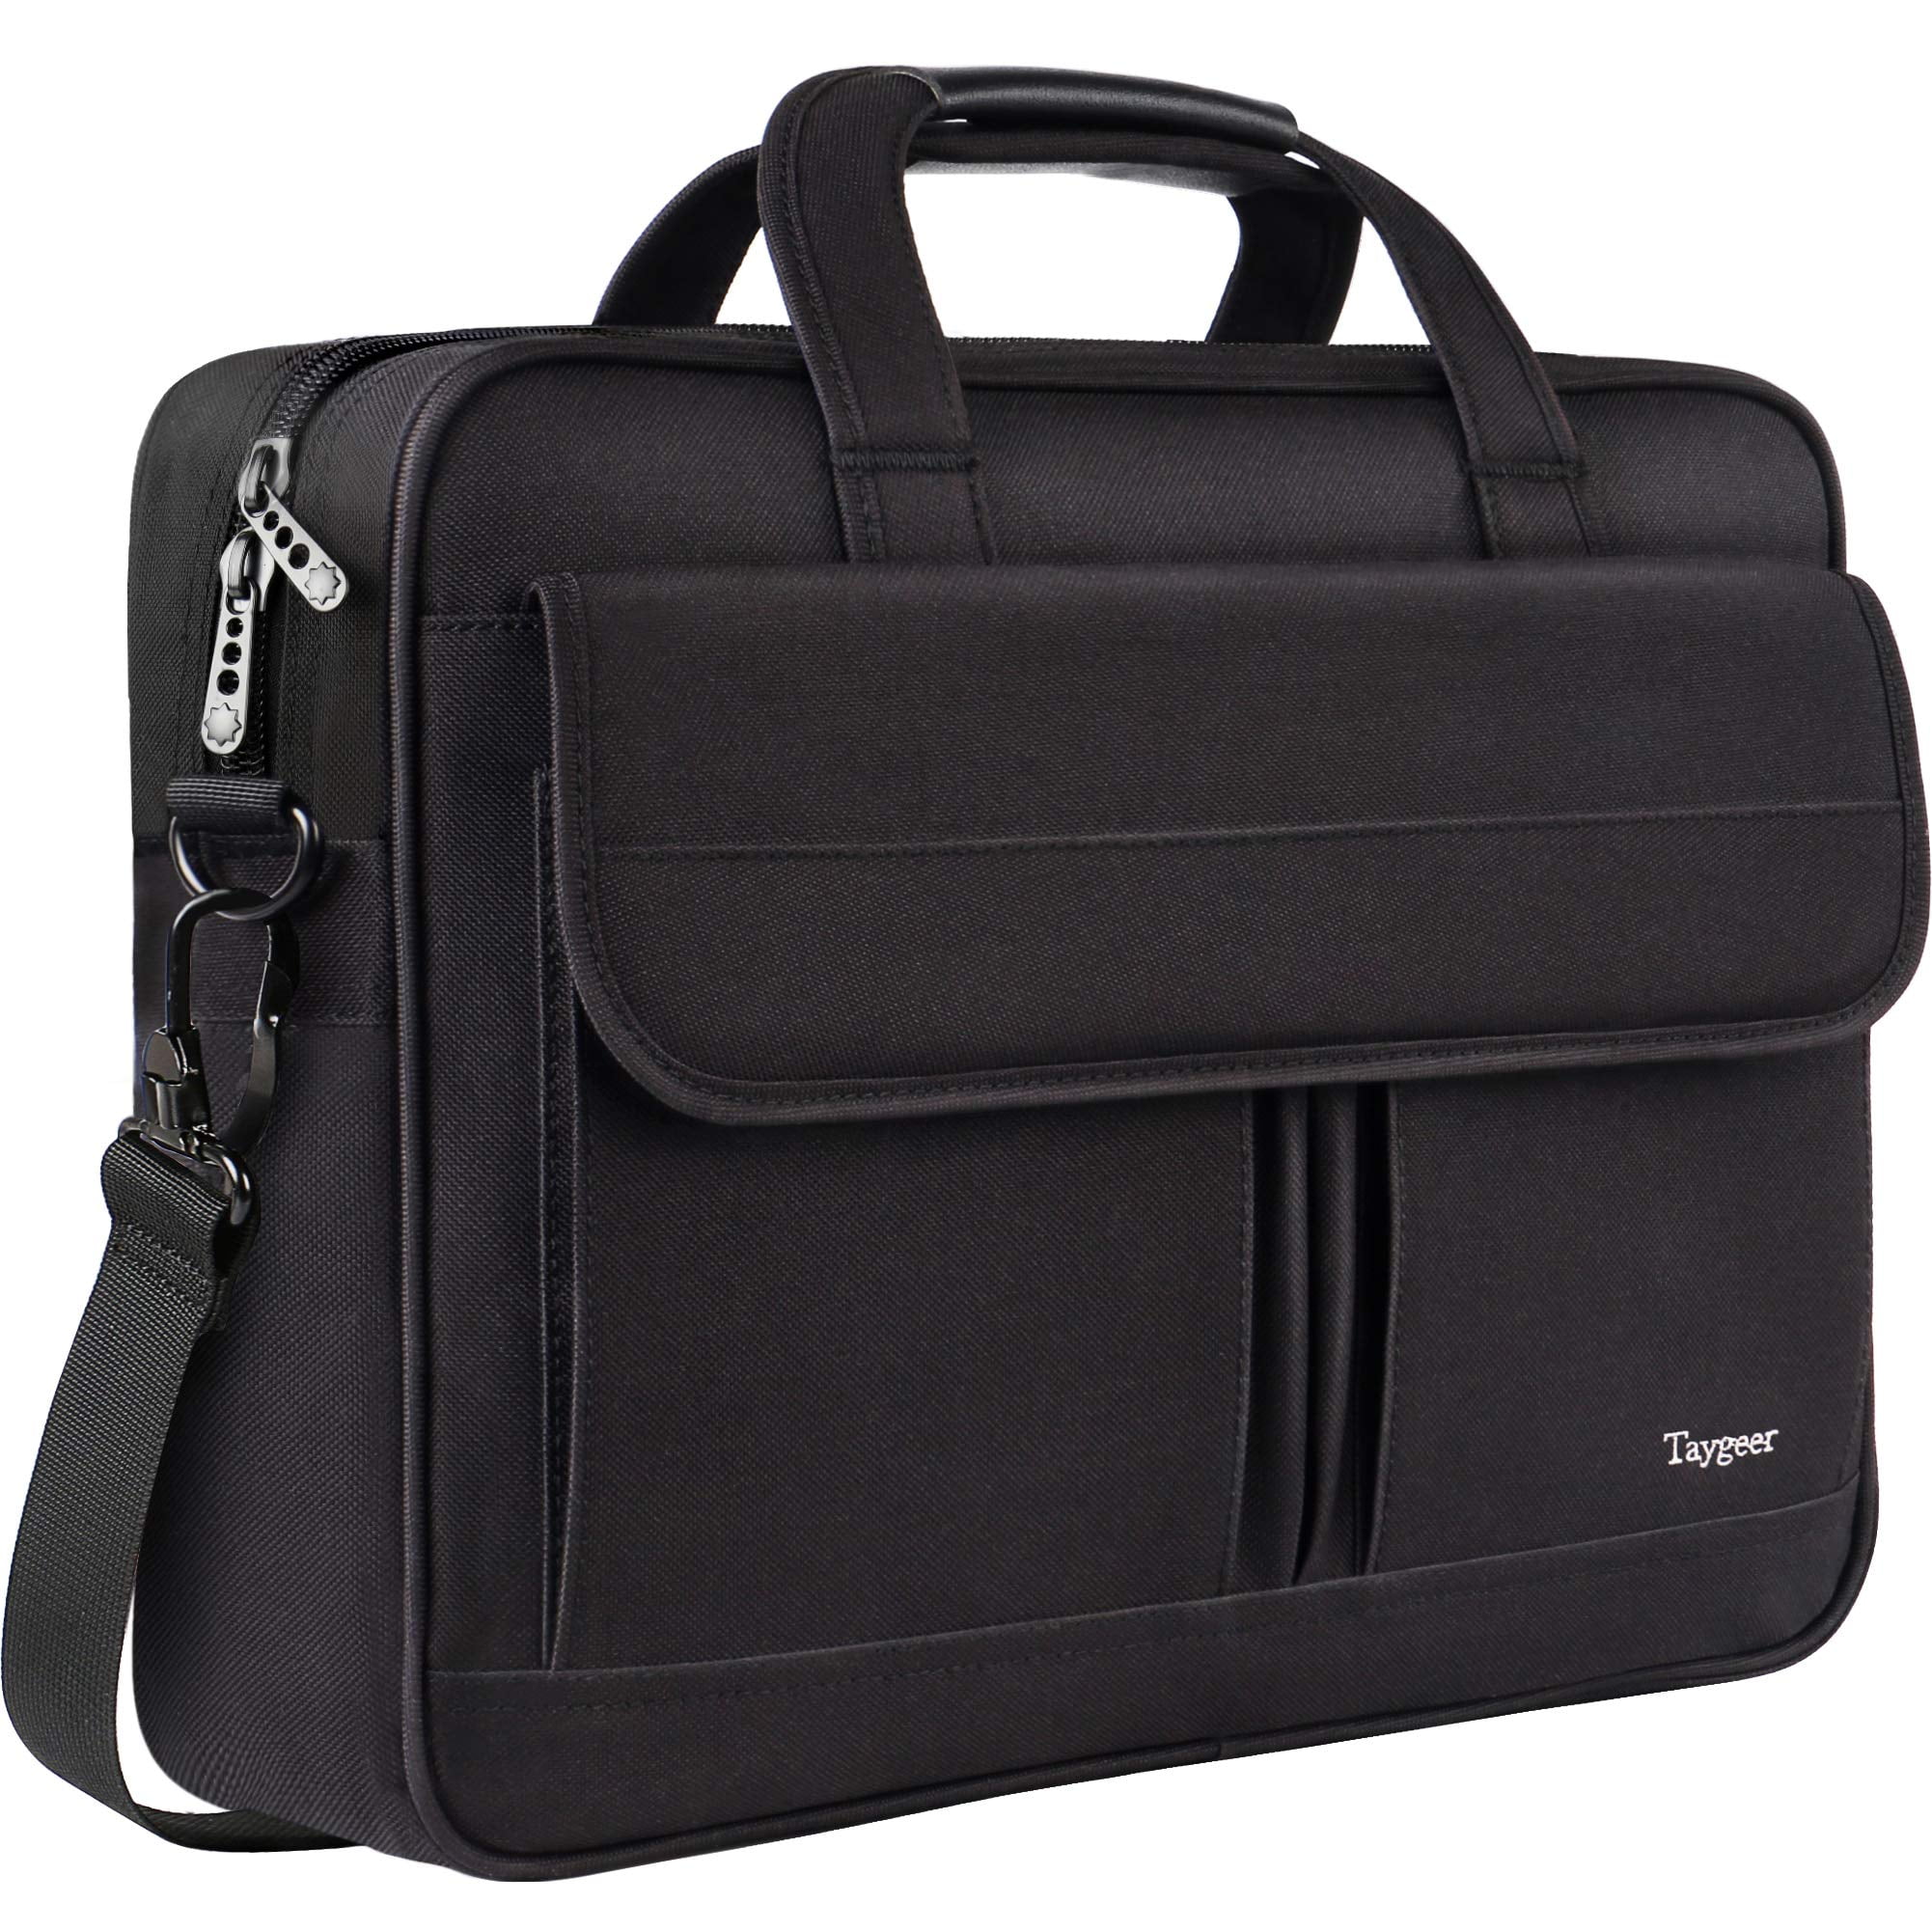 Laptop Shoulder Bag 15 Inch Briefcase Document Messenger Bag with Handle & Shoulder Strap Retro Red Black Plaid